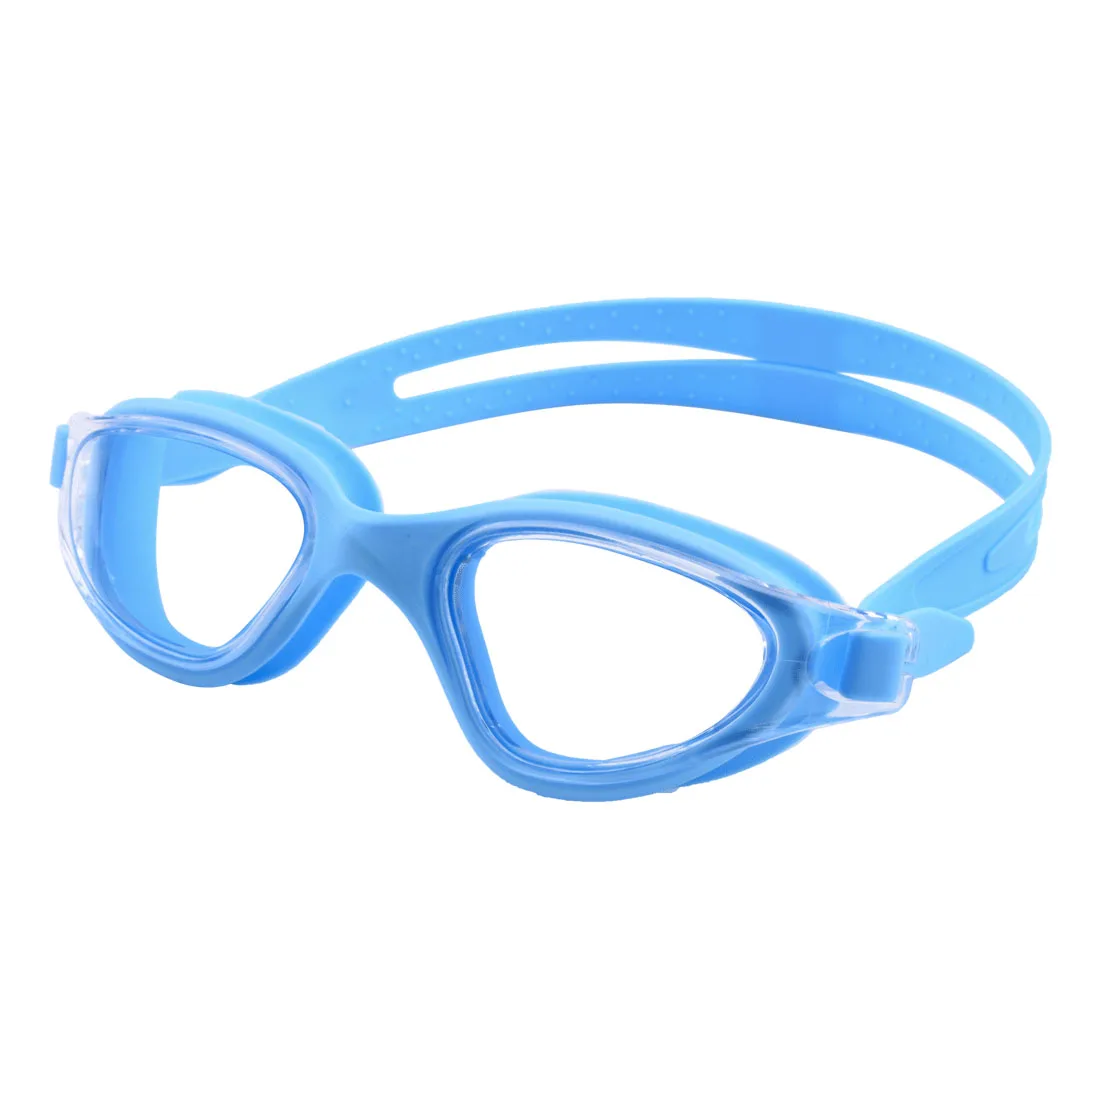 Úszás szemüvegek Úszik Védőszemüveg professzionális anti-fog UV védelem számára férfiak Nők felnőttek gyerekeknek Vízhatlan esőköpény swimwear búvárkodás eyewear